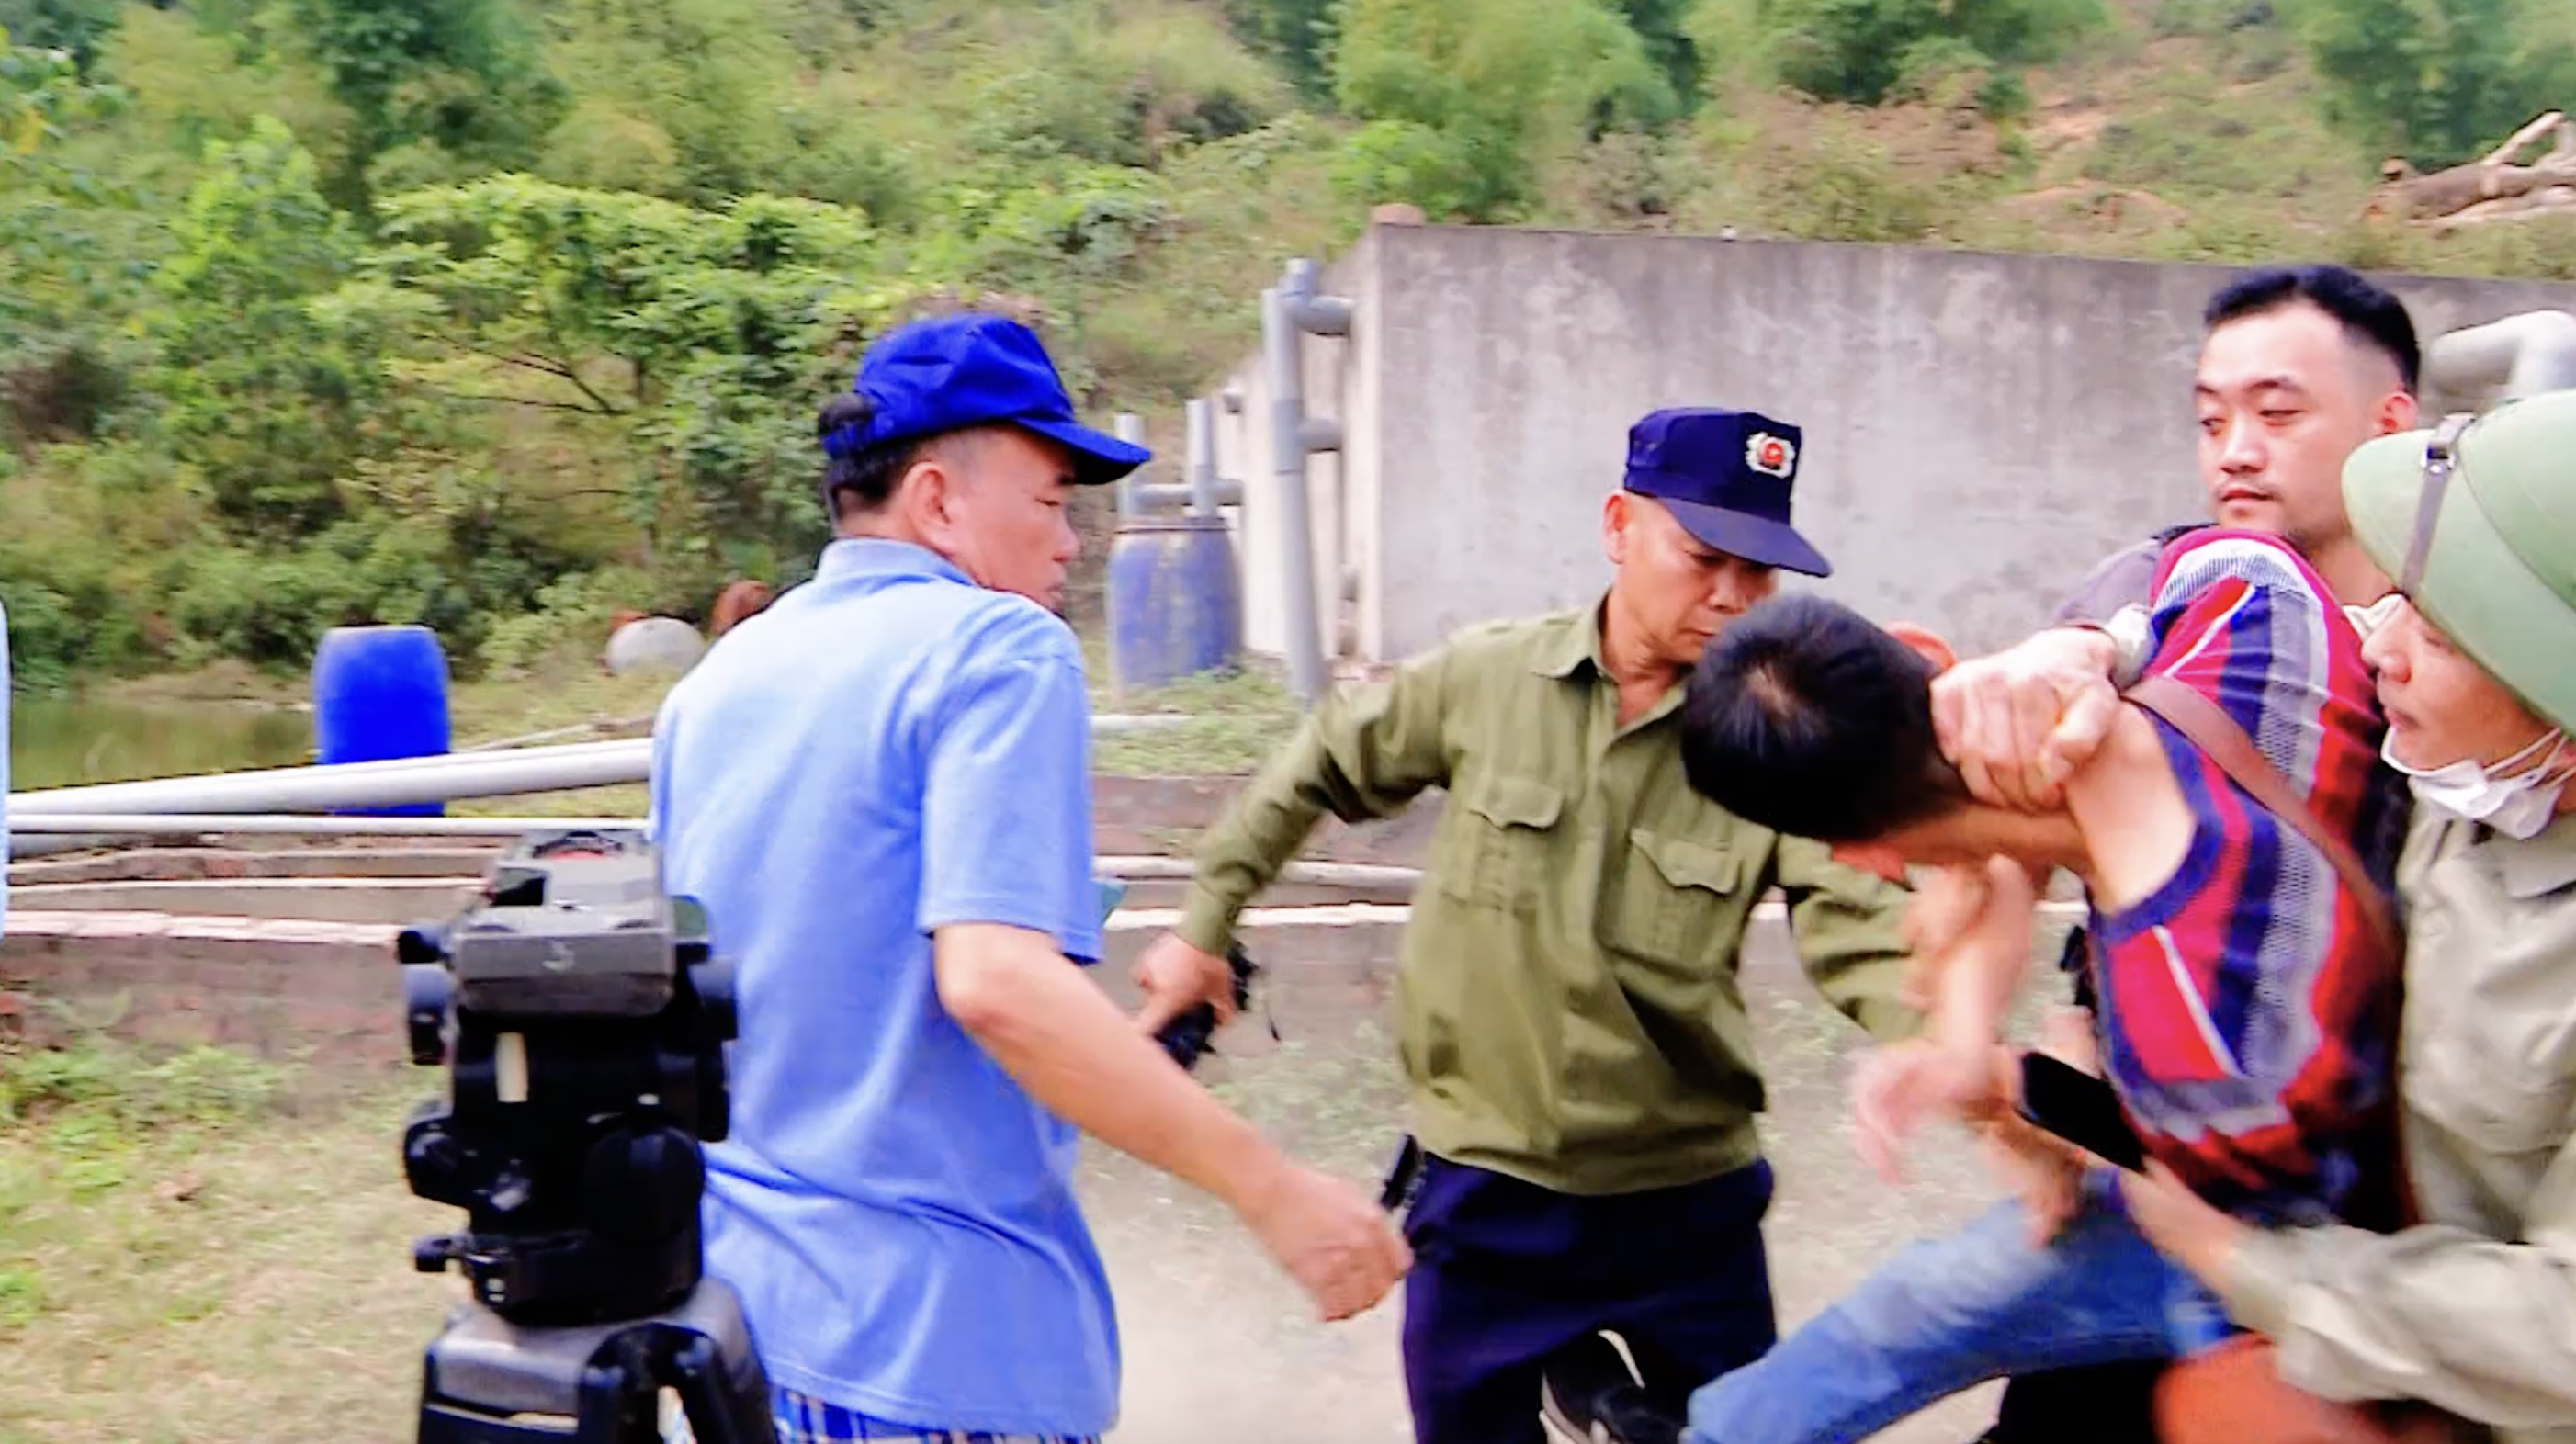 Phóng viên Báo NTNN/Dân Việt bị hành hung khi đang ghi hình nhà máy nghi gây ô nhiễm